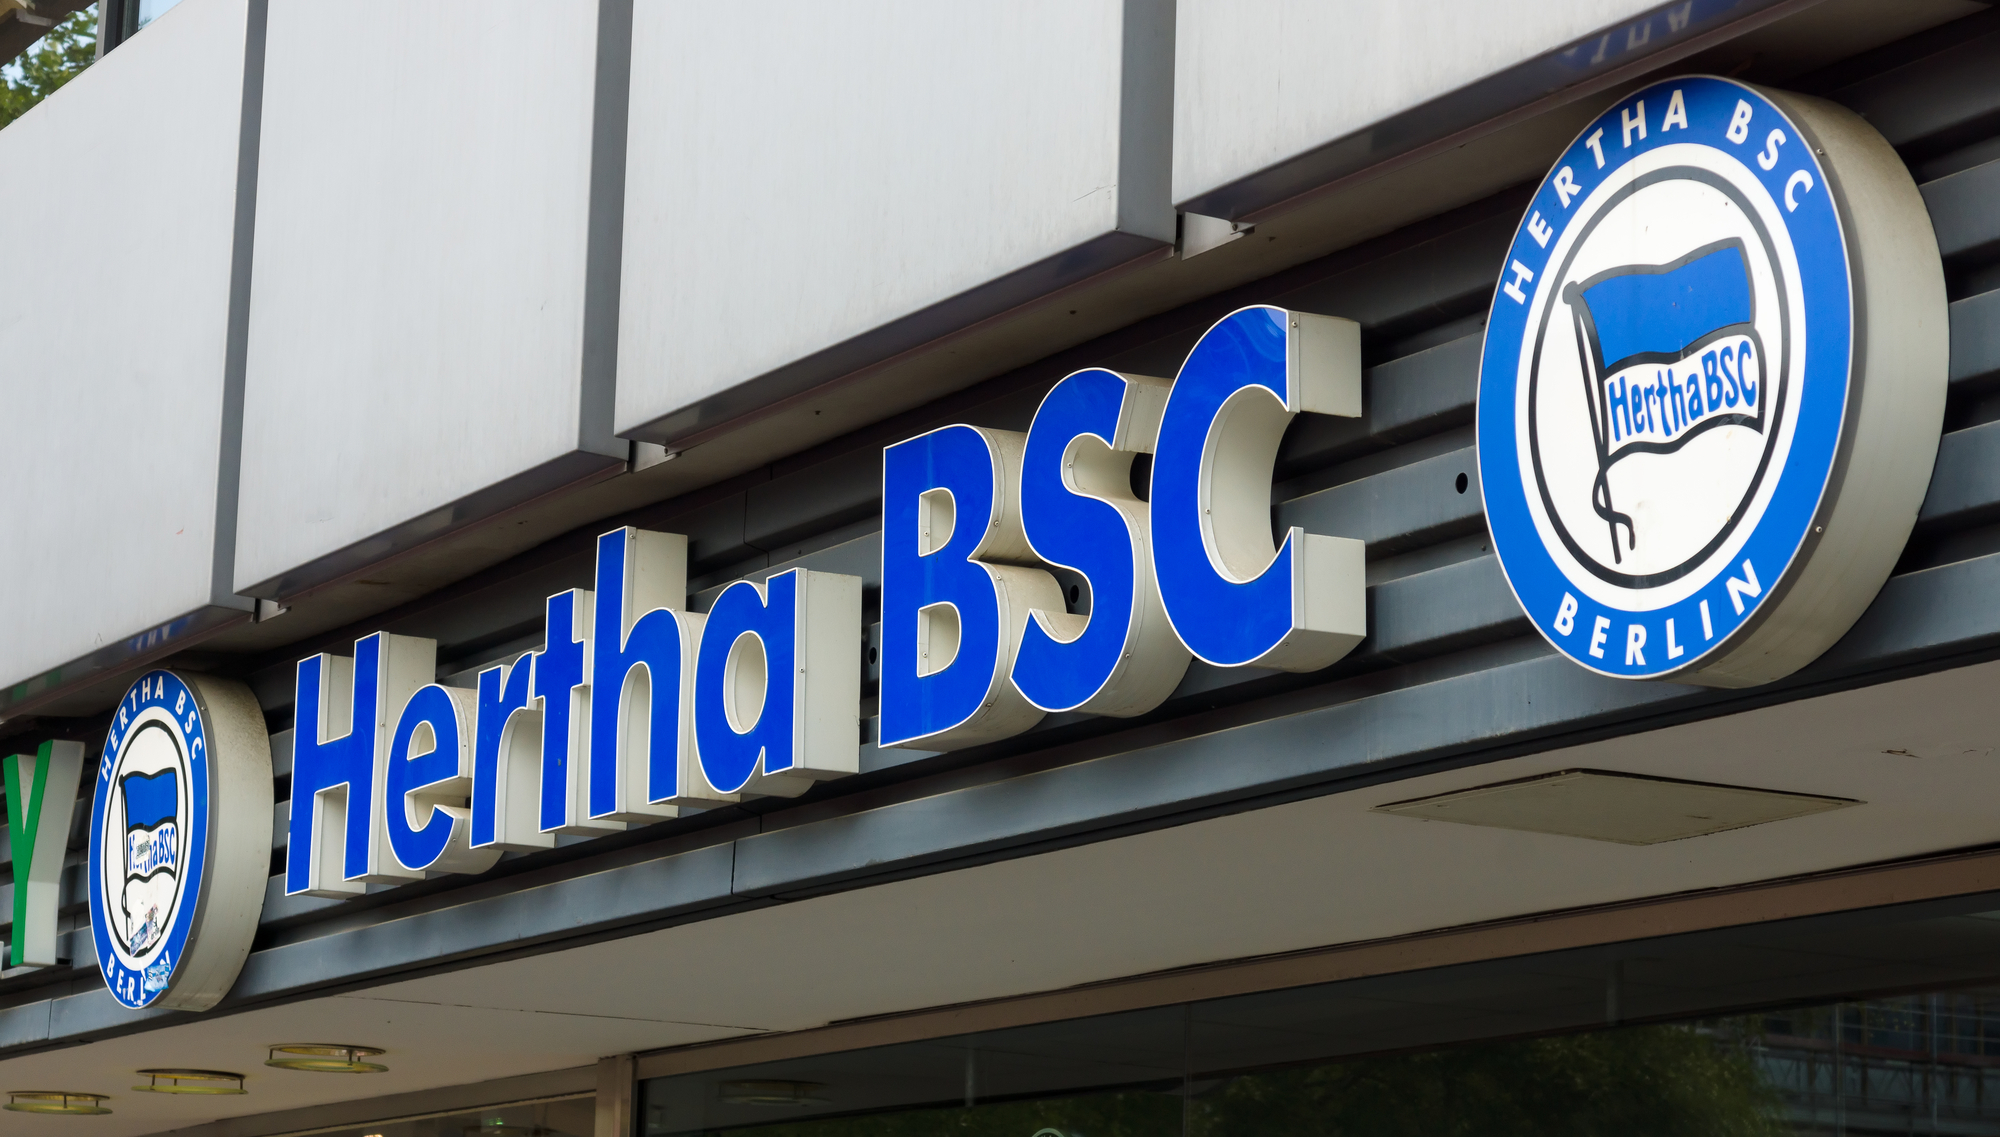 Todesfall bei Hertha BSC